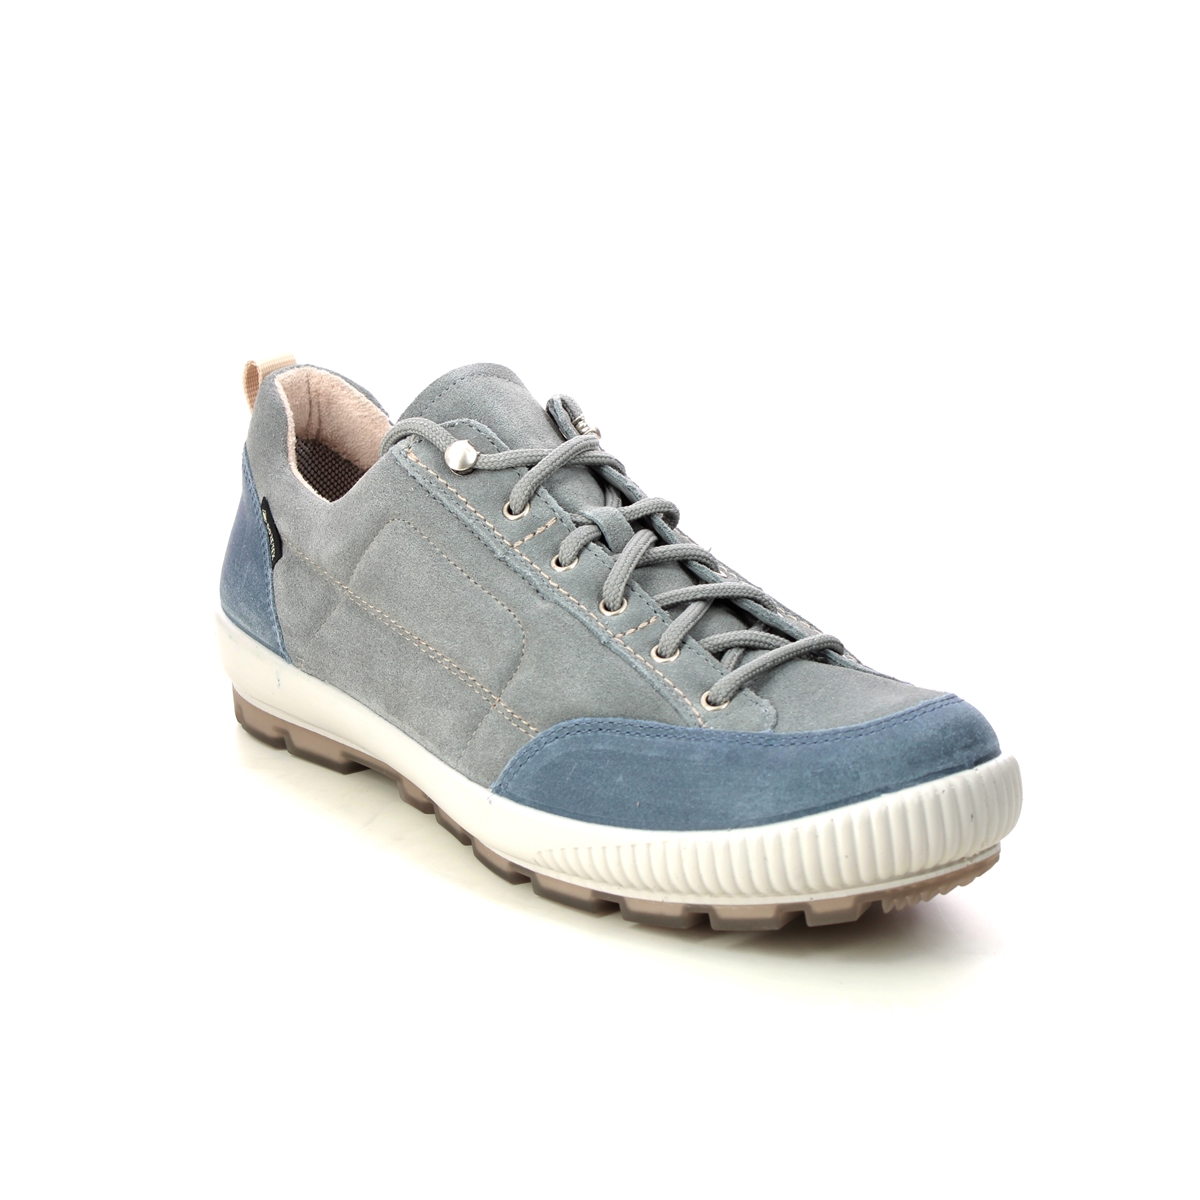 Legero Tanaro Trek Gtx Blue Grey Womens Walking Shoes 2000210-2410 In Size 7.5 In Plain Blue Grey